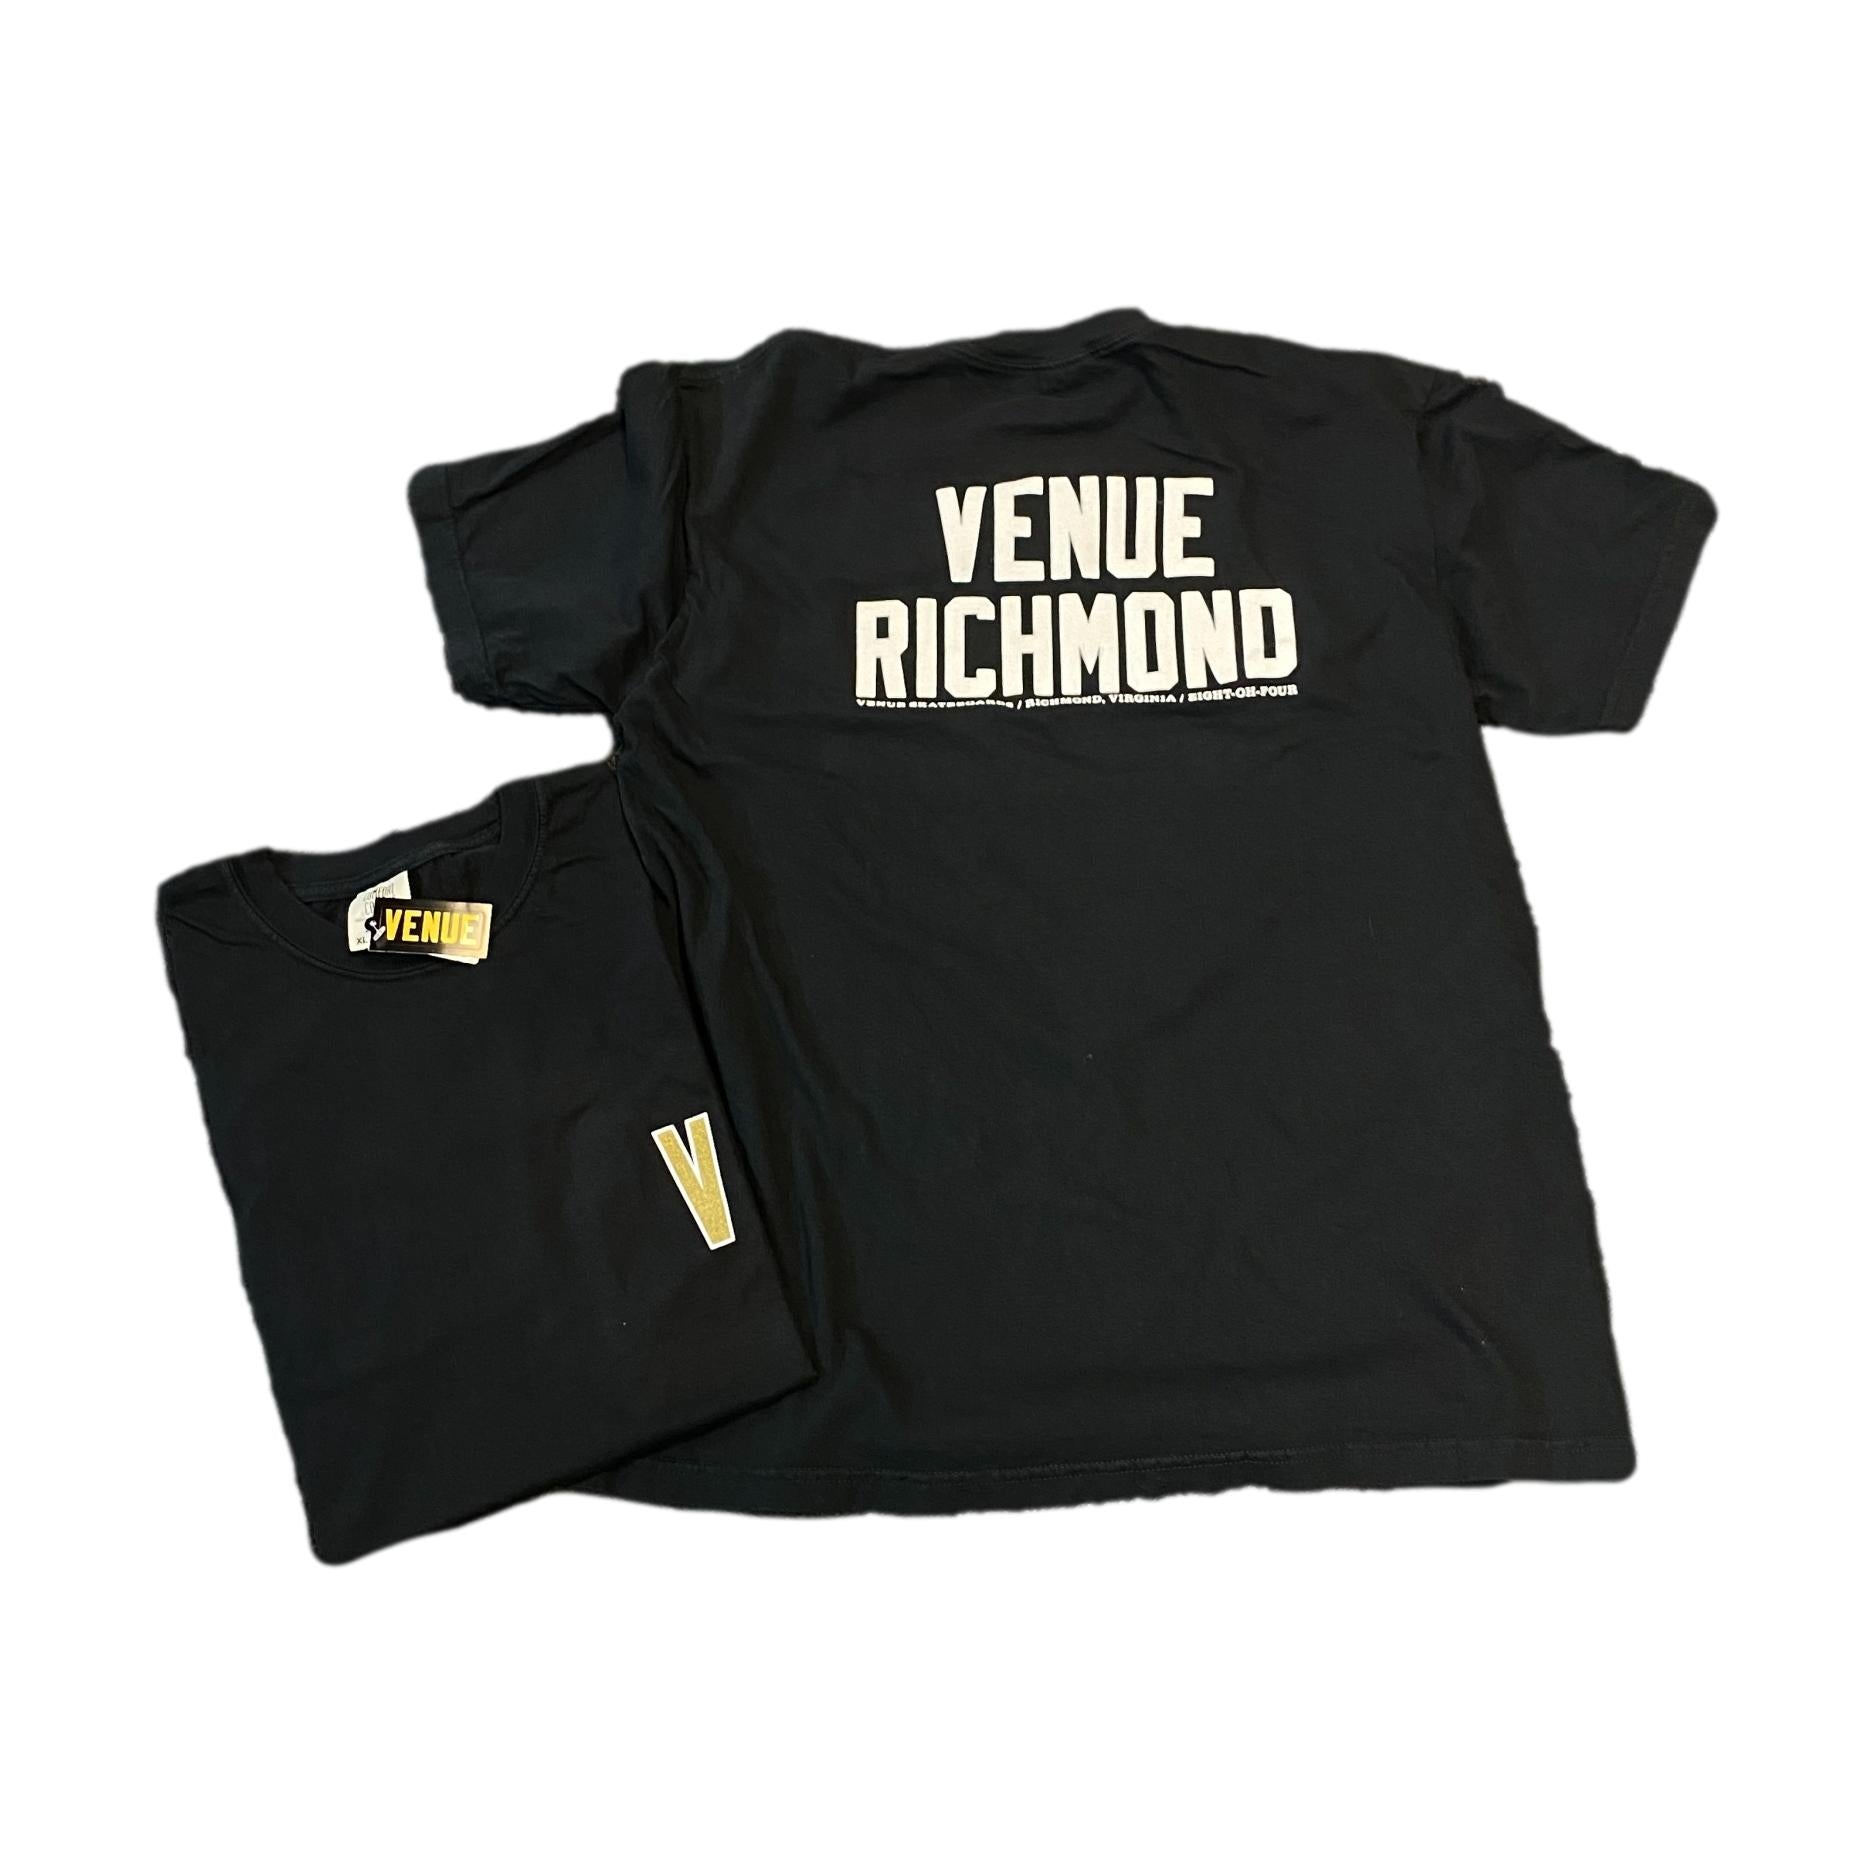 Venue "Venue Richmond" T-Shirt Black w/Gold Front V - Venue Skateboards